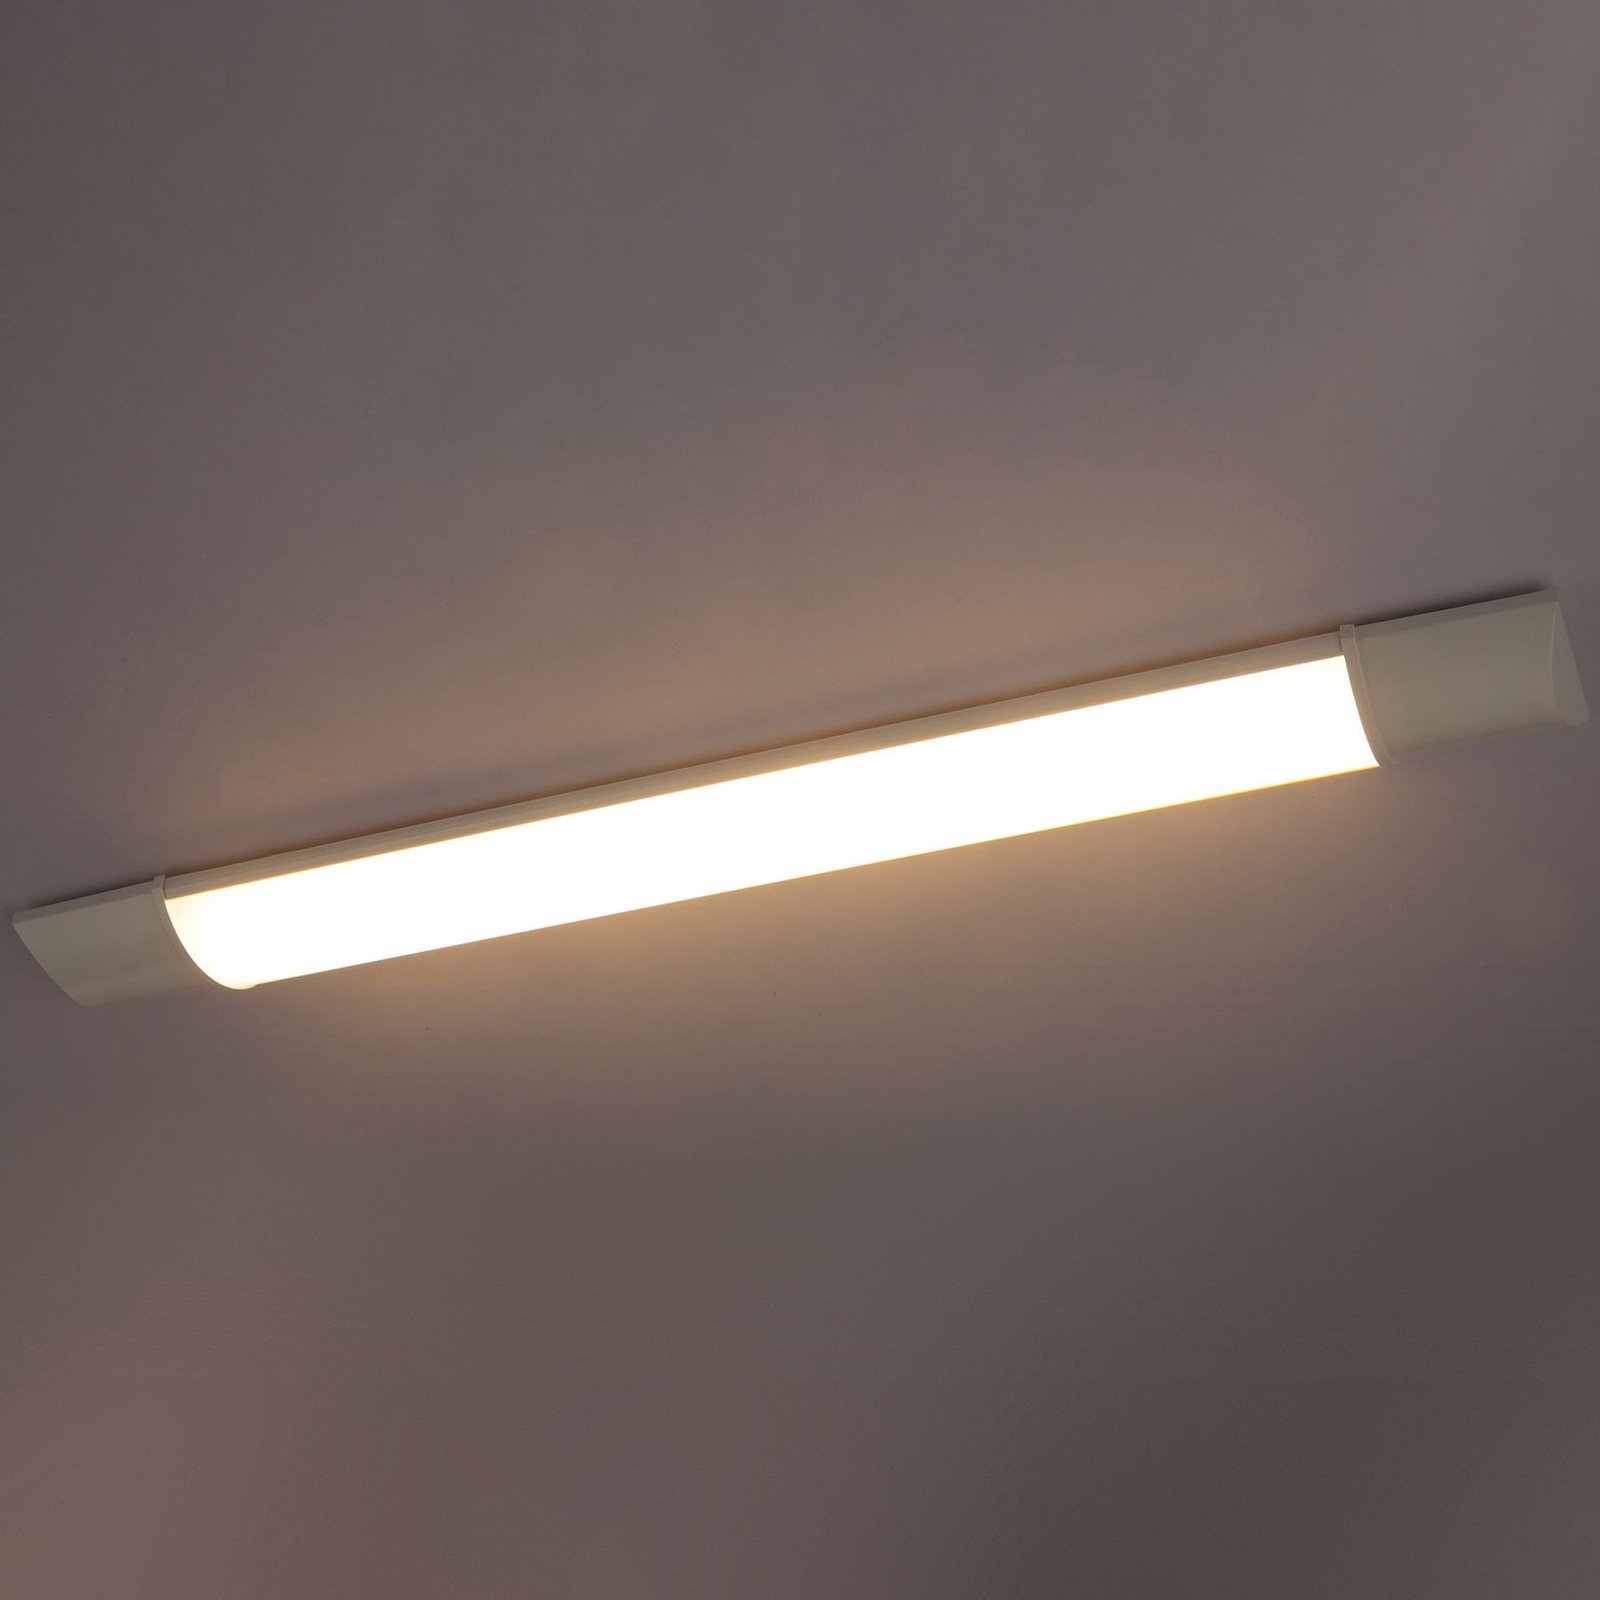 LED meubelverlichting Obara, IP20, 90 cm lang